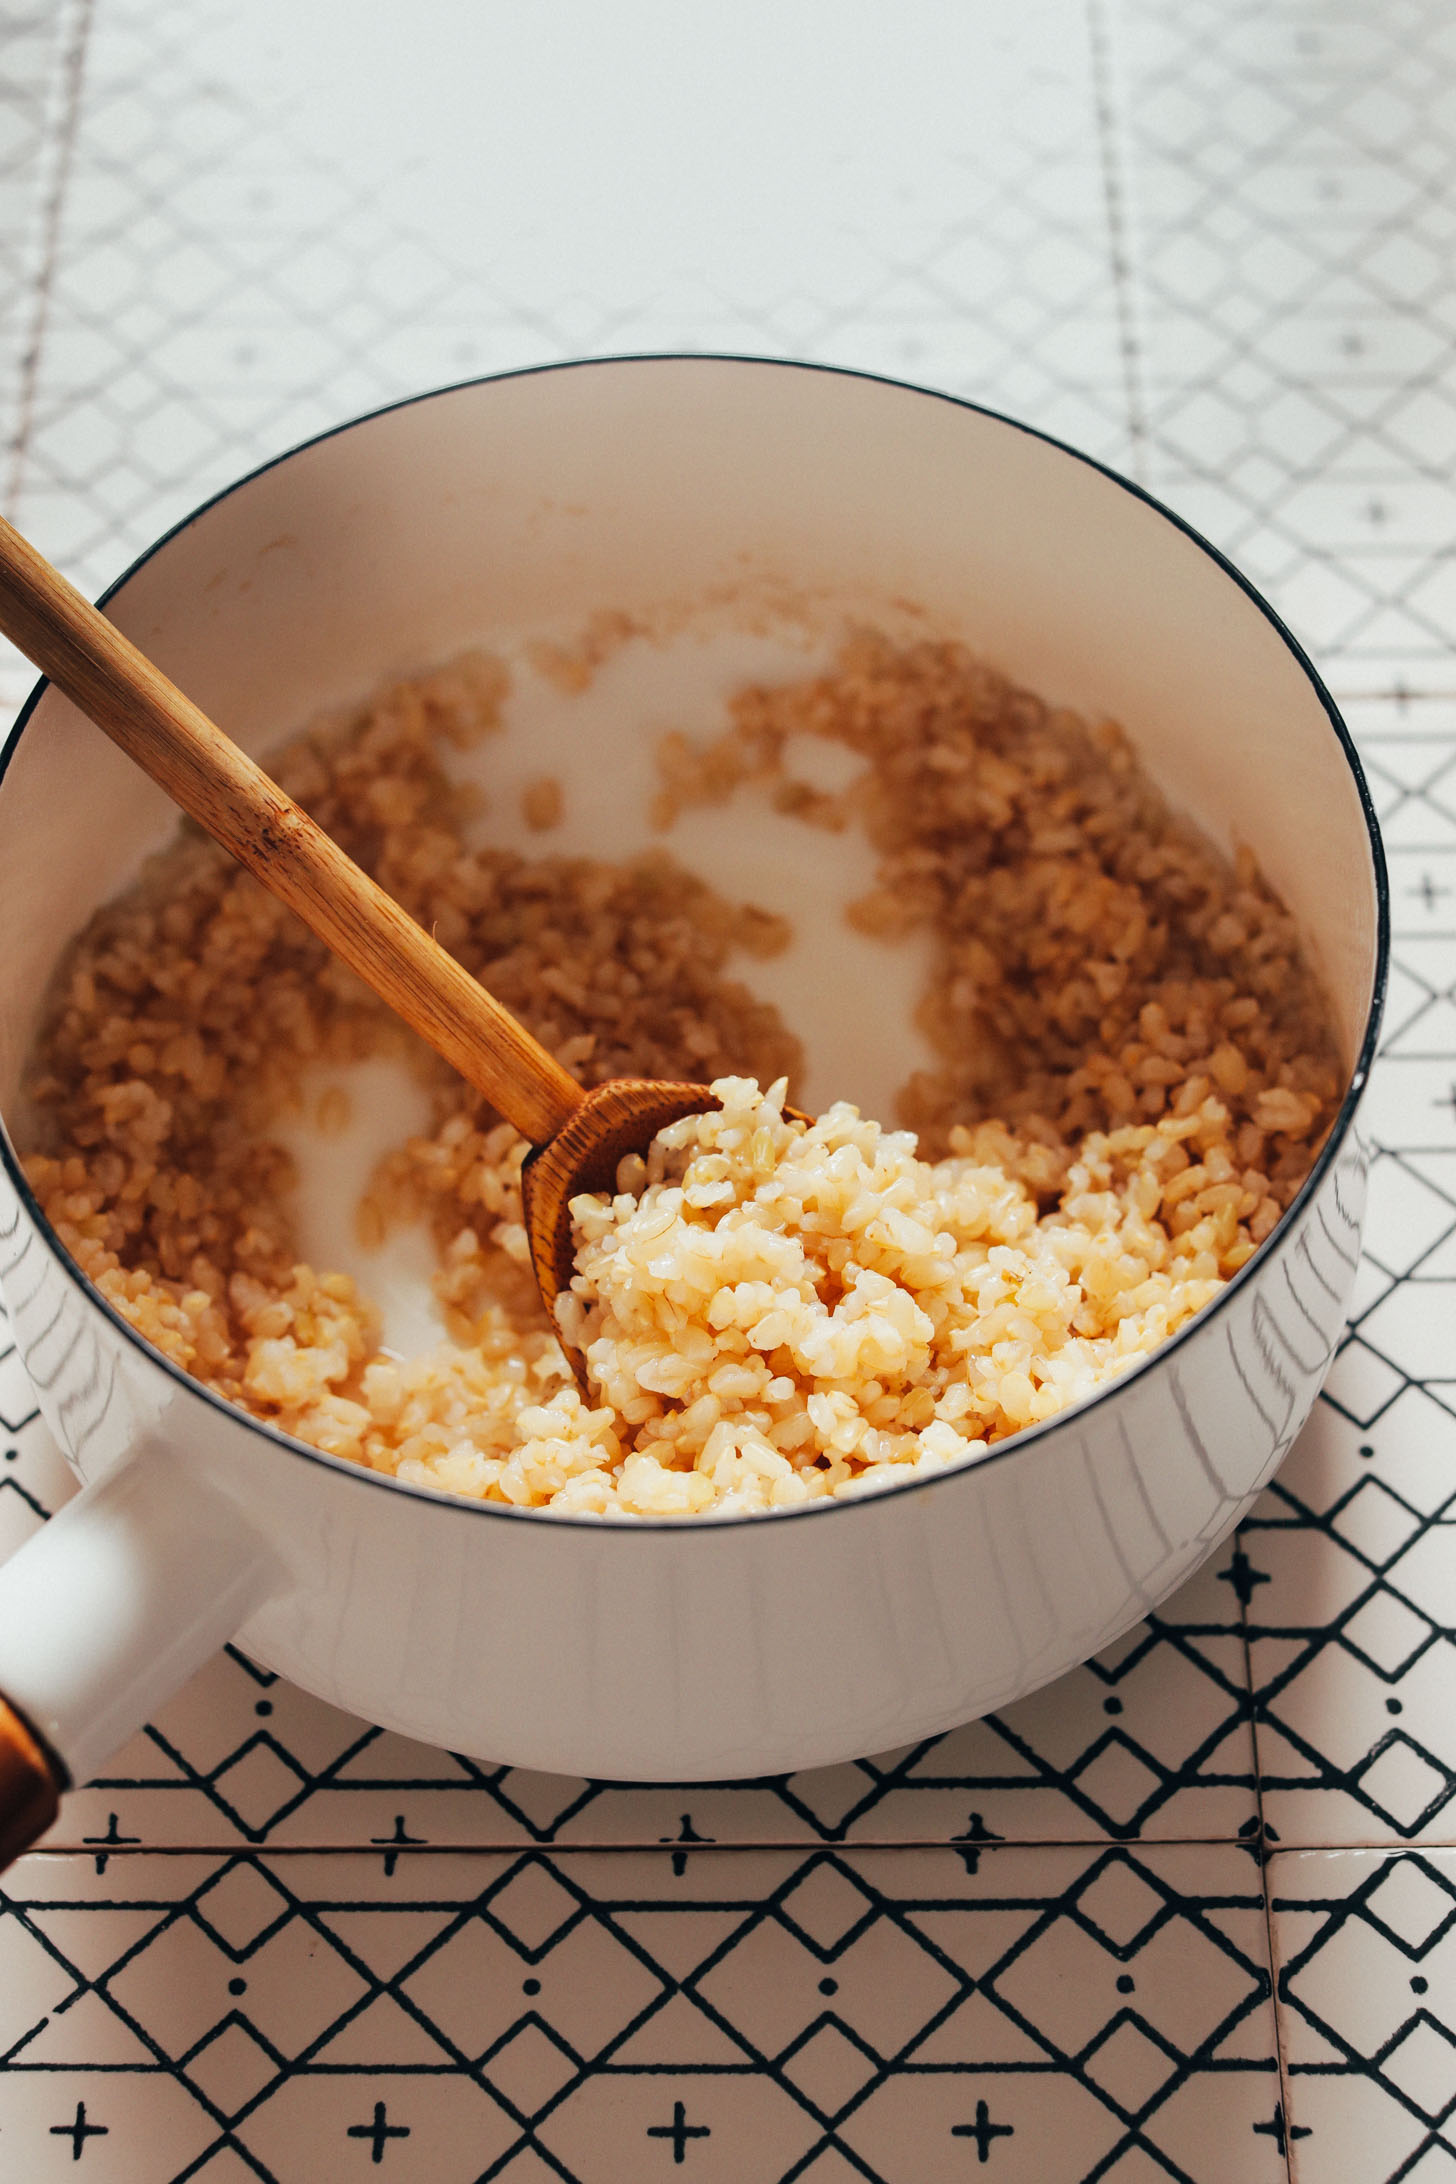 is brown rice gluten-free